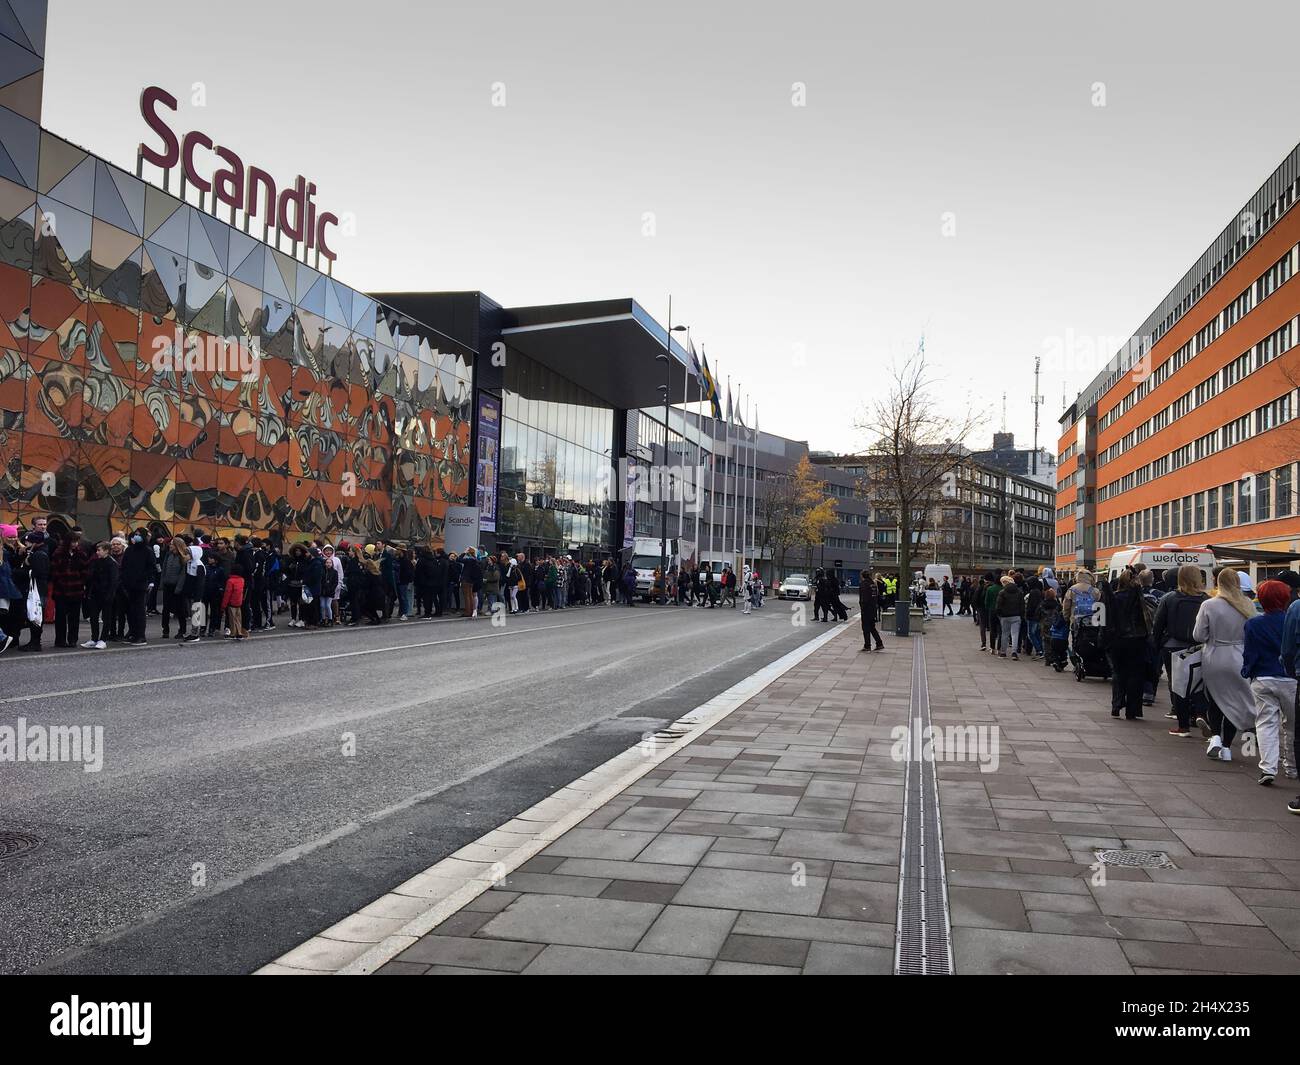 Comic con 2021 visiteurs dans des files d'attente à trois voies à l'extérieur de l'hôtel Scandic où l'événement COMIC CON nordique a lieu le 5-7 novembre 2021.Suède Banque D'Images